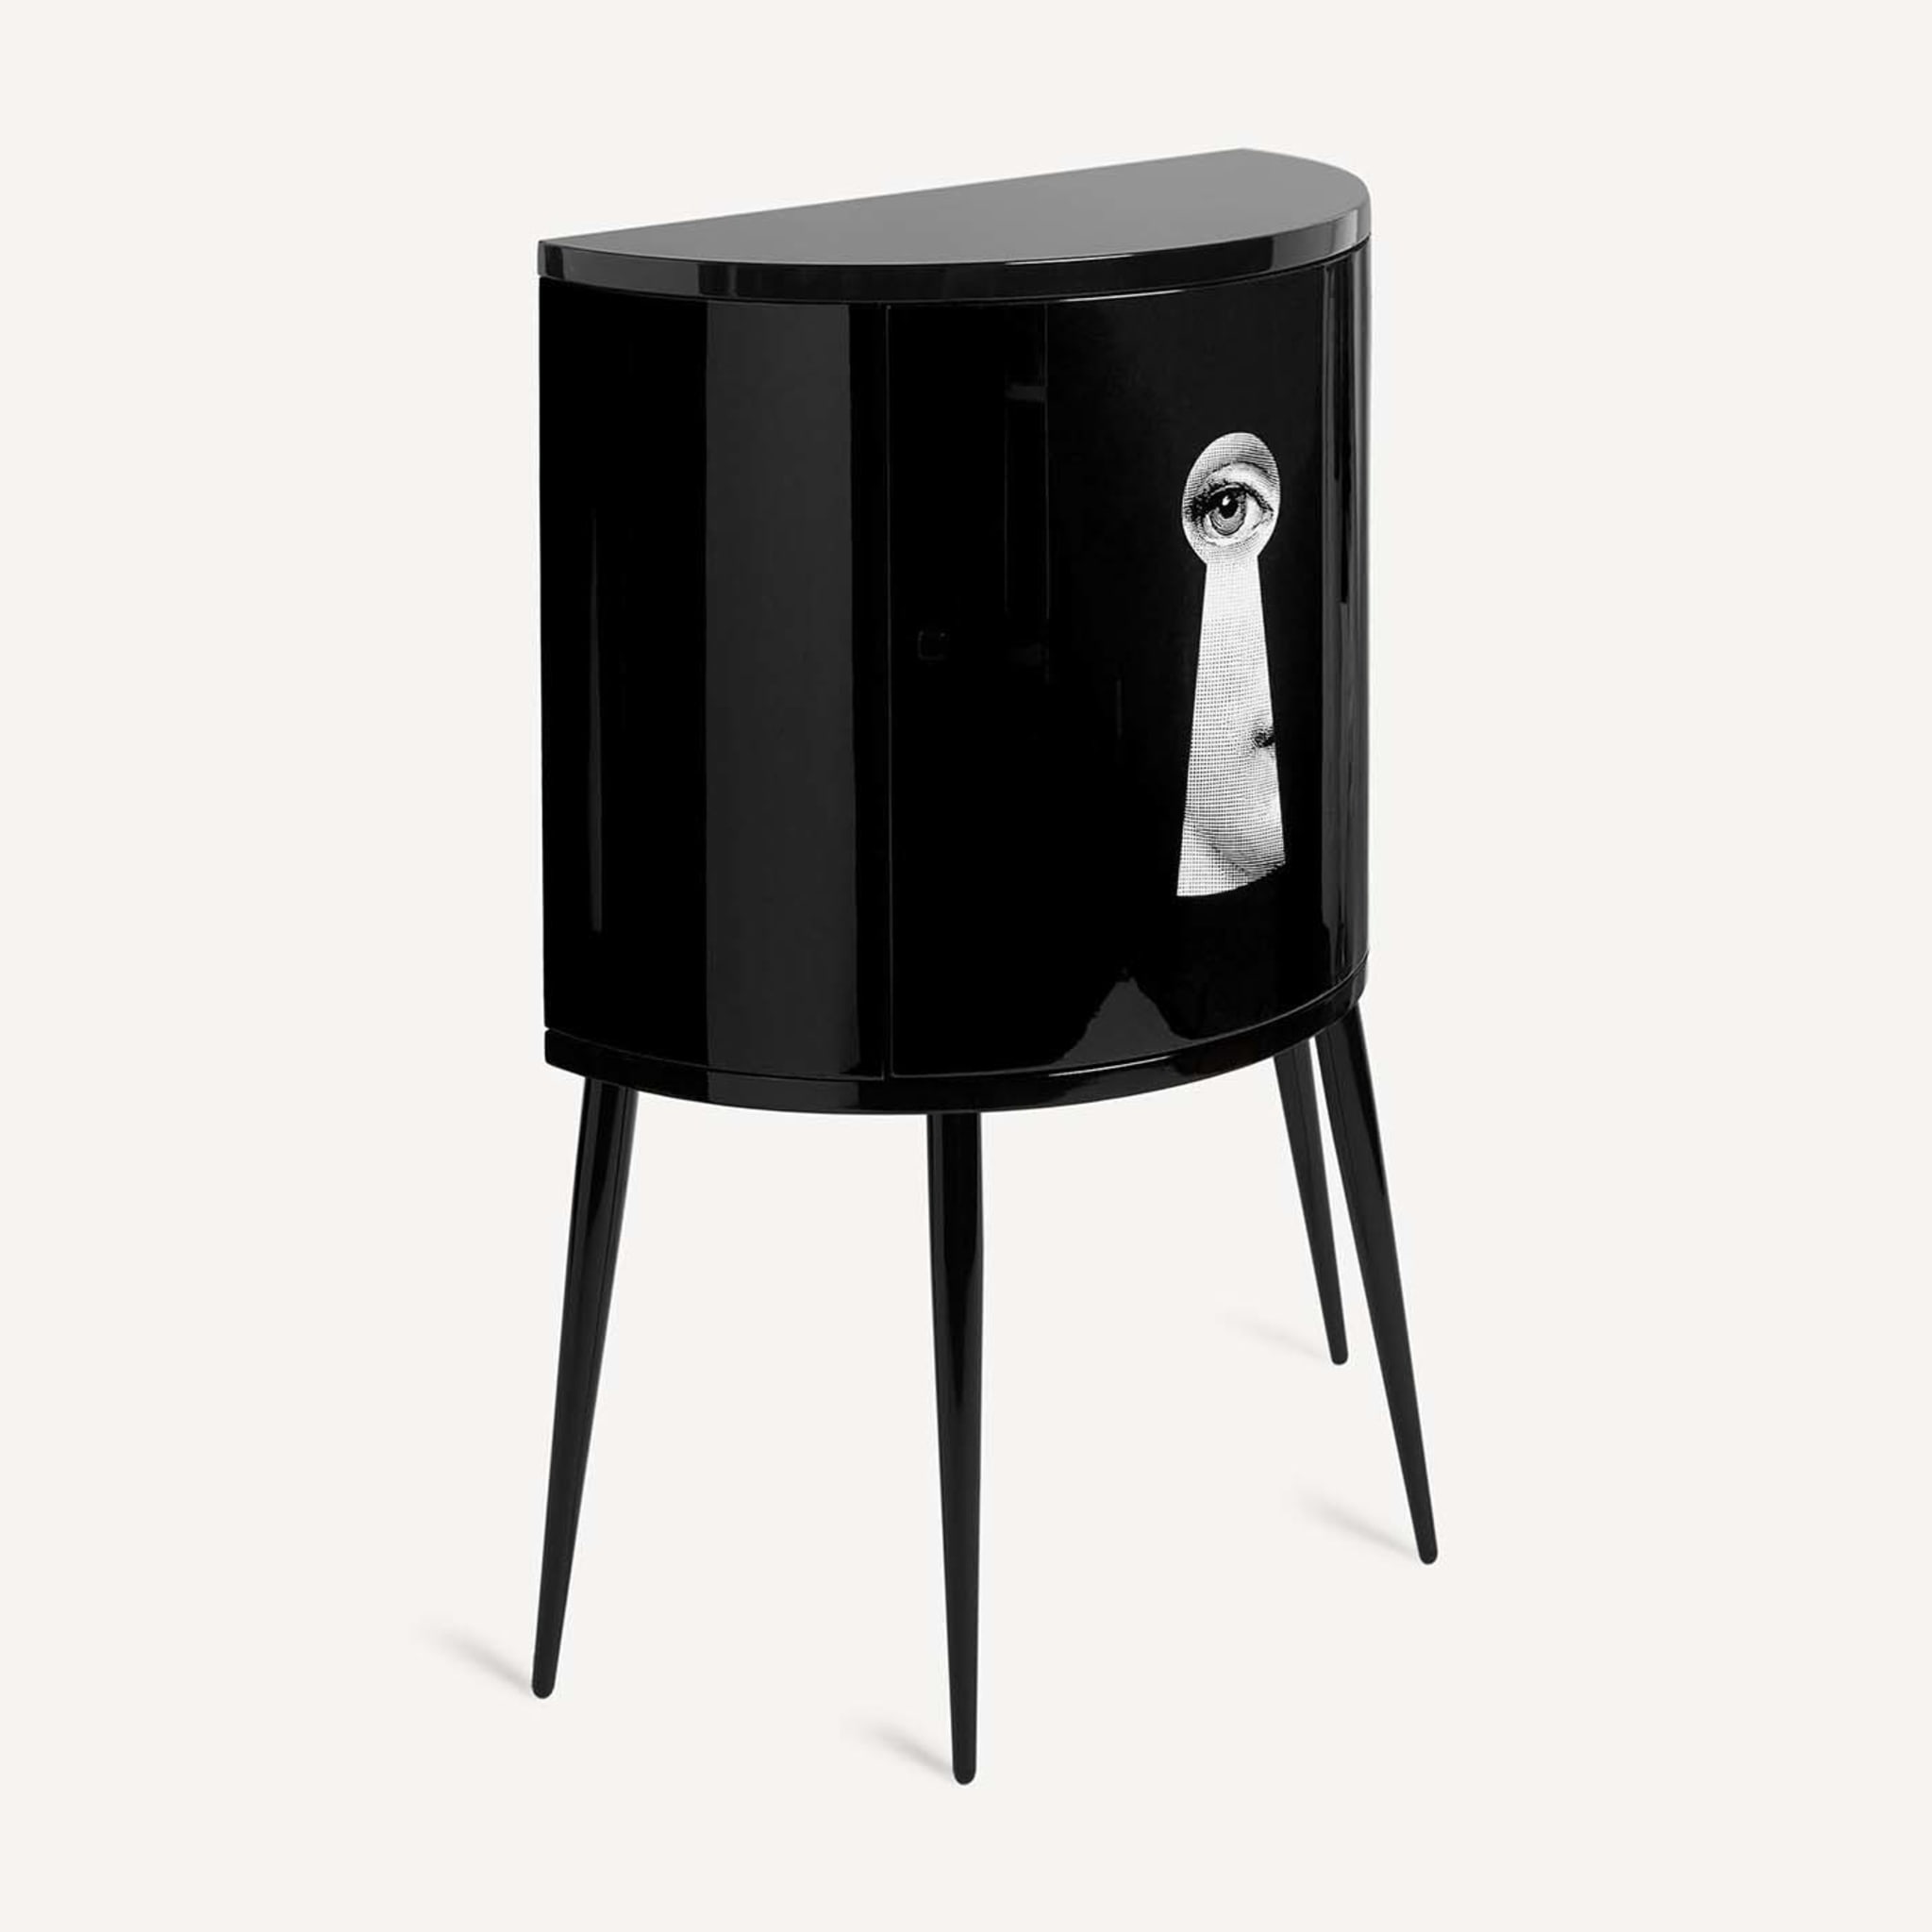 Serratura Black Curved Small Cabinet - Alternative view 3